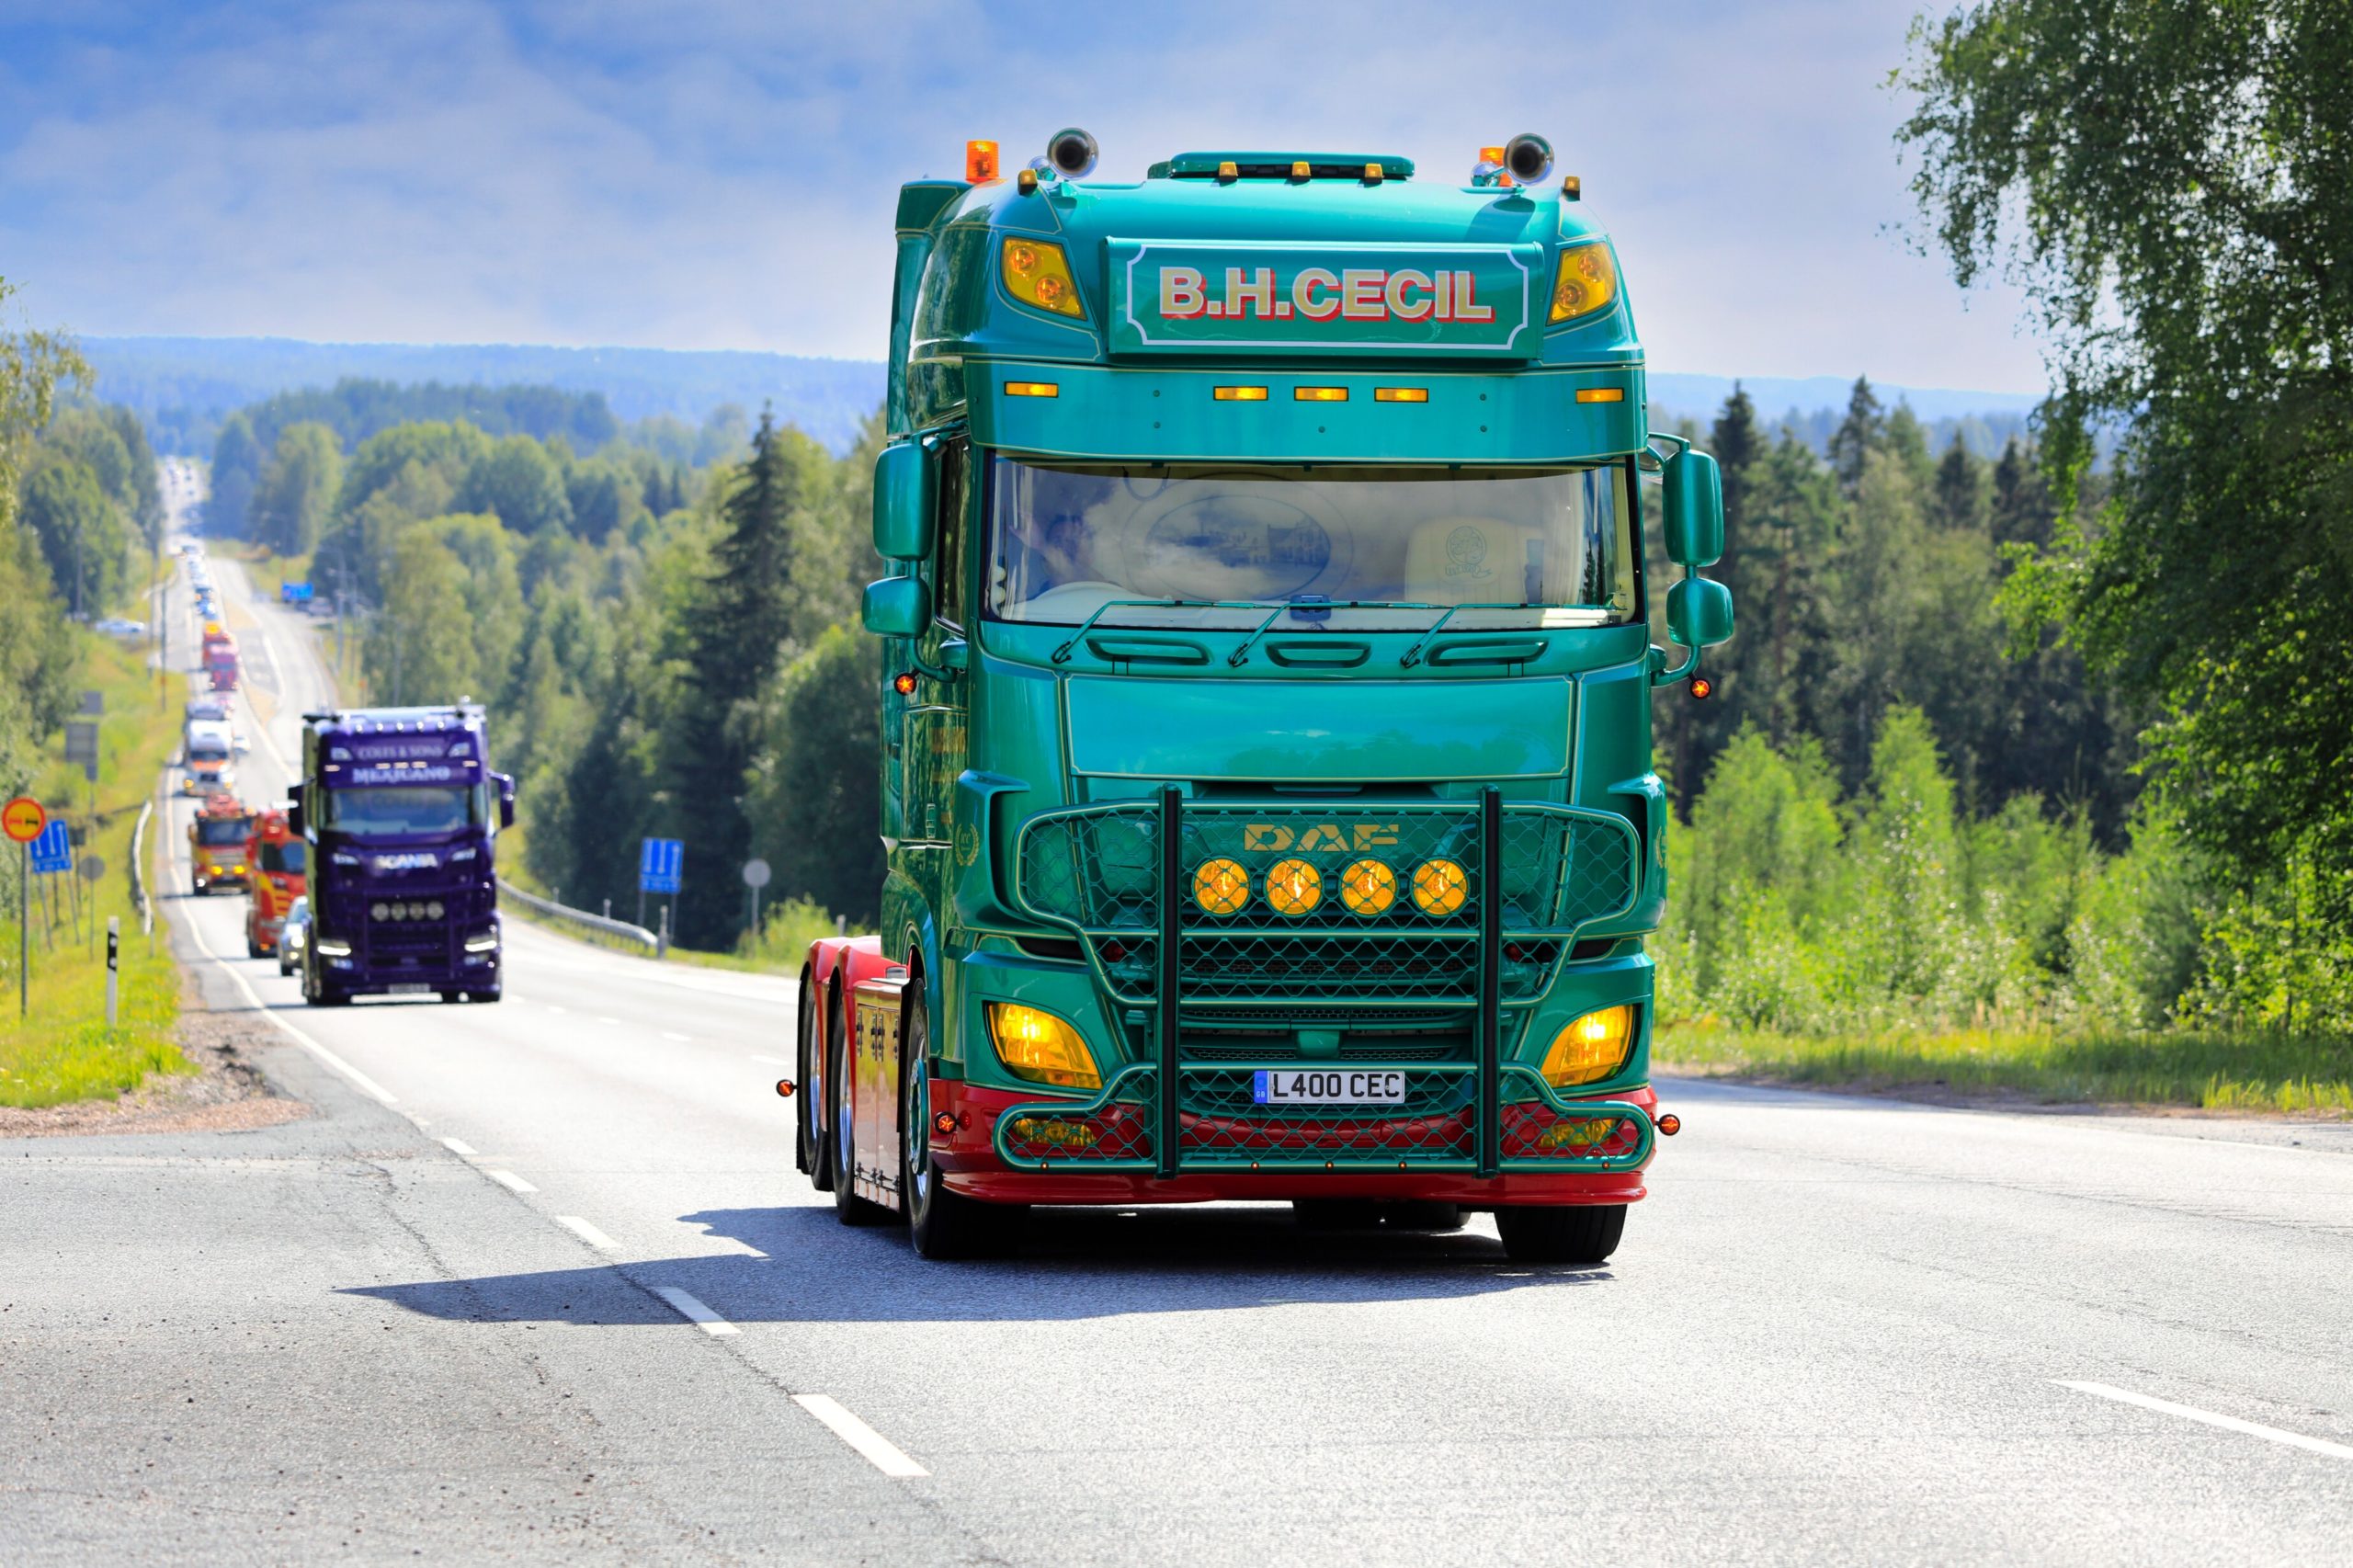 'VK moet inheemse werknemers werven om tekort aan vrachtwagenchauffeurs op te lossen'